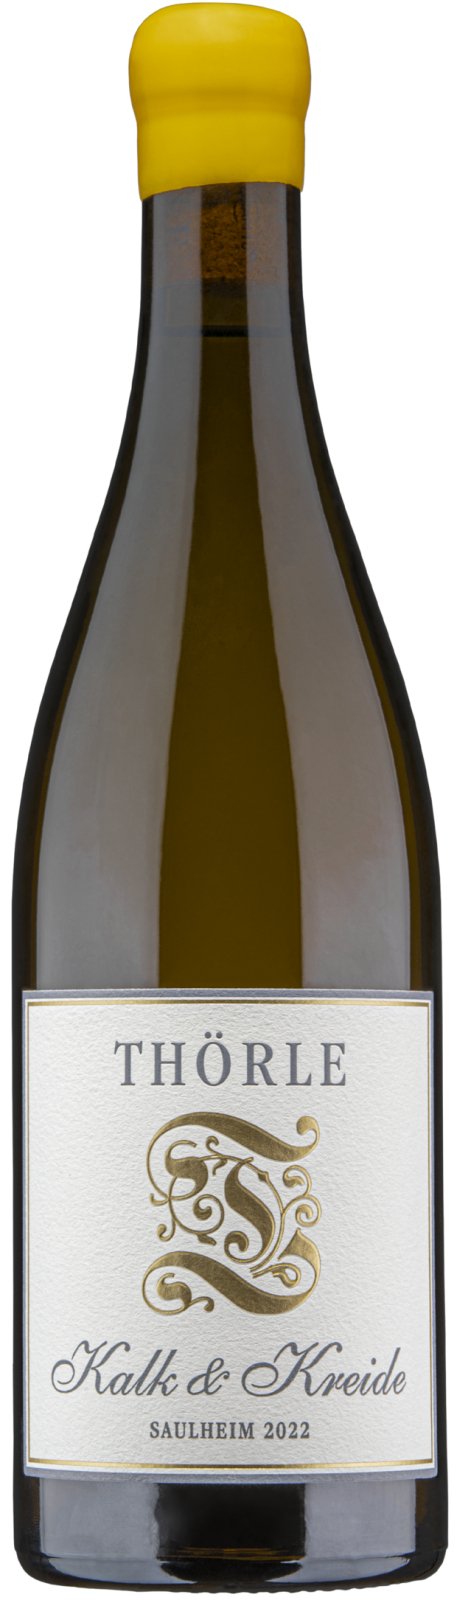 Thörle Blanc Kalk 2022 Chardonnay - & Wine Caviste Kreide Pinot